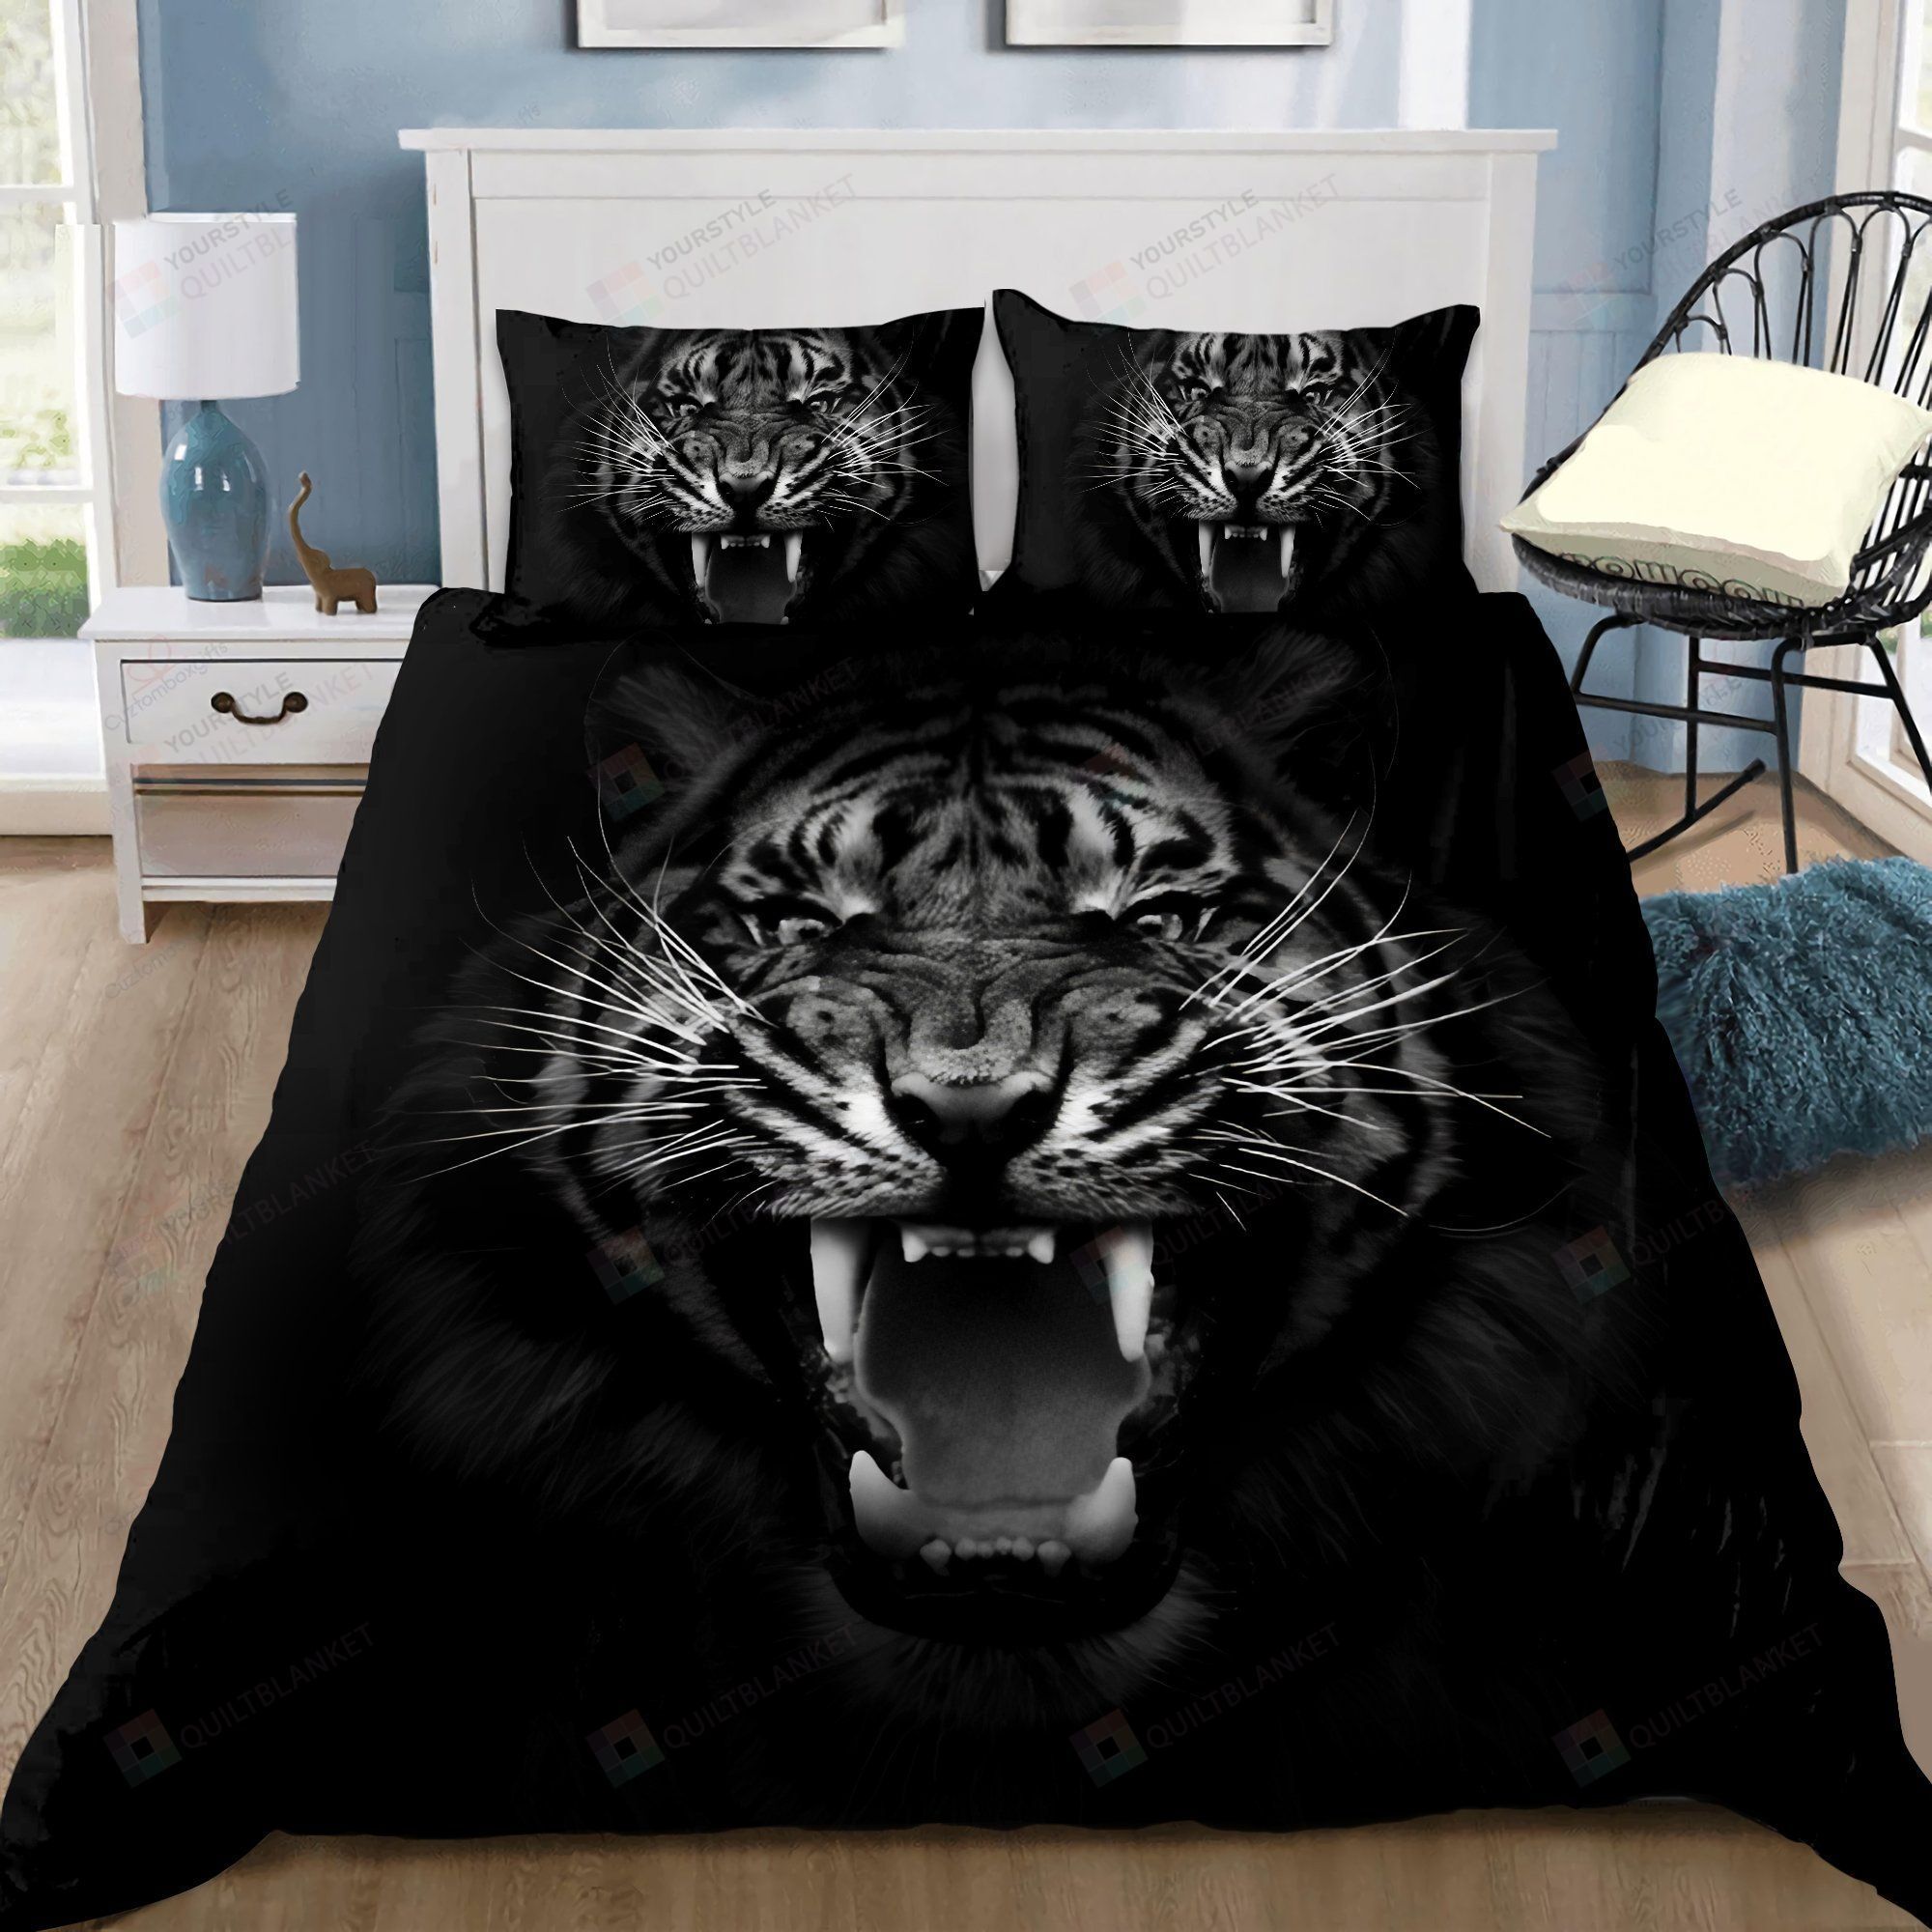 Tiger Black Bedding Set Cotton Bed Sheets Spread Comforter Duvet Cover Bedding Sets